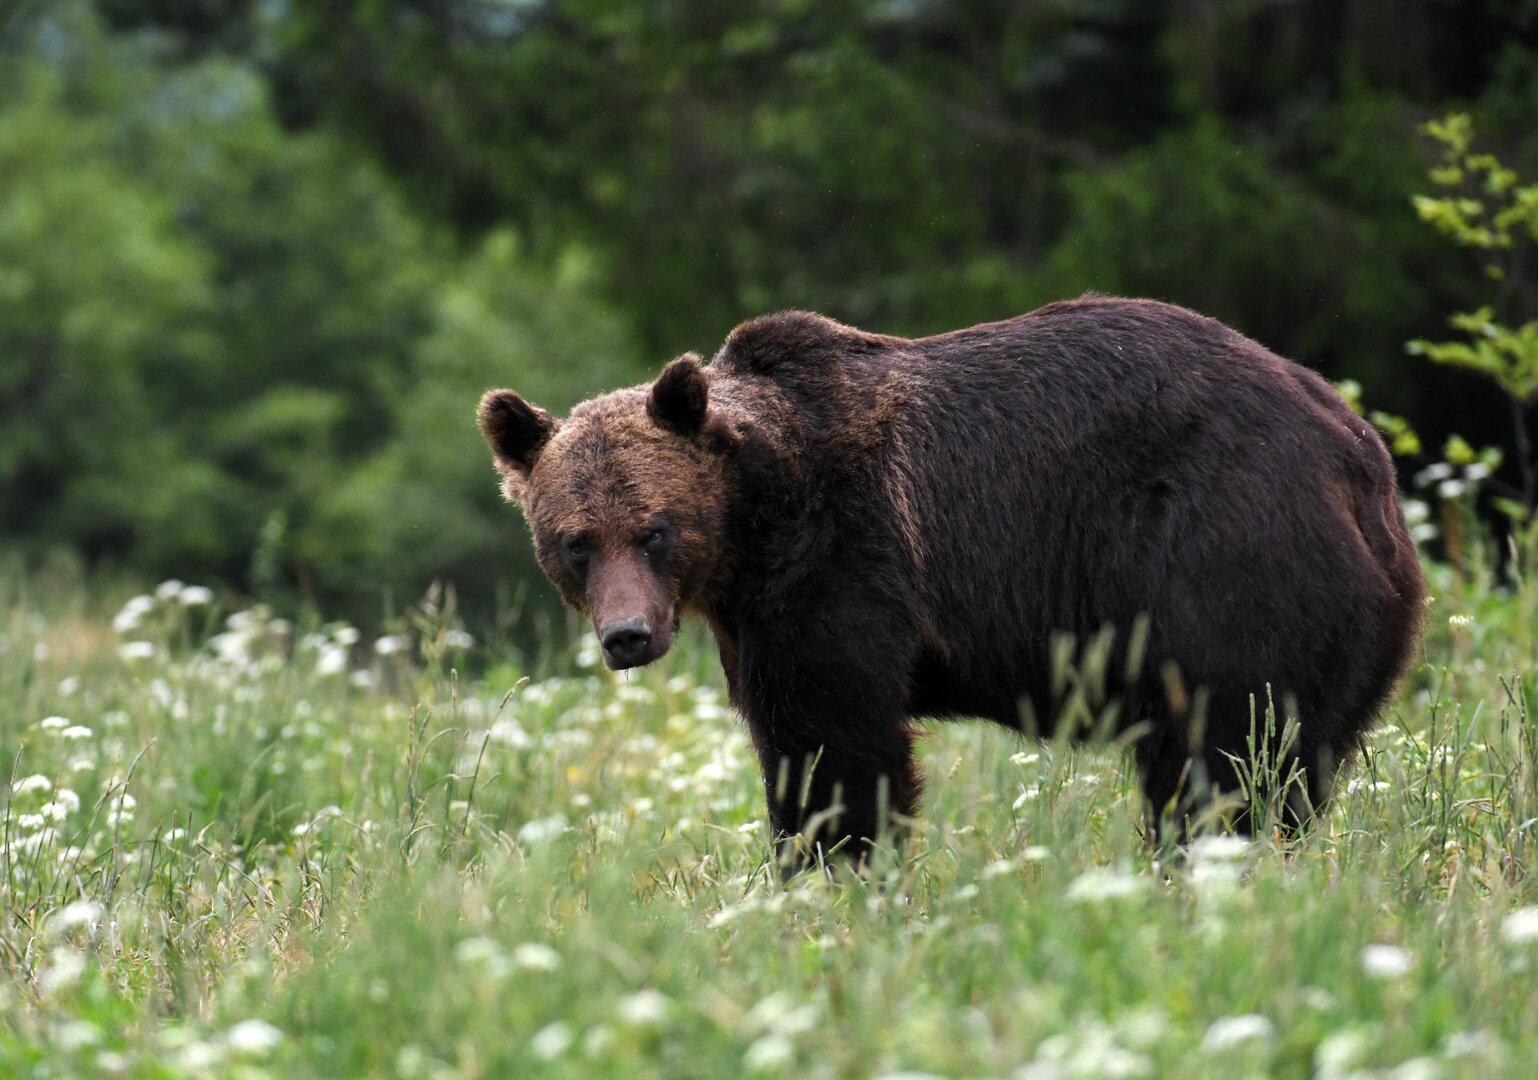 Angriff beim Wandern: Bär tötet Touristin in Rumänien